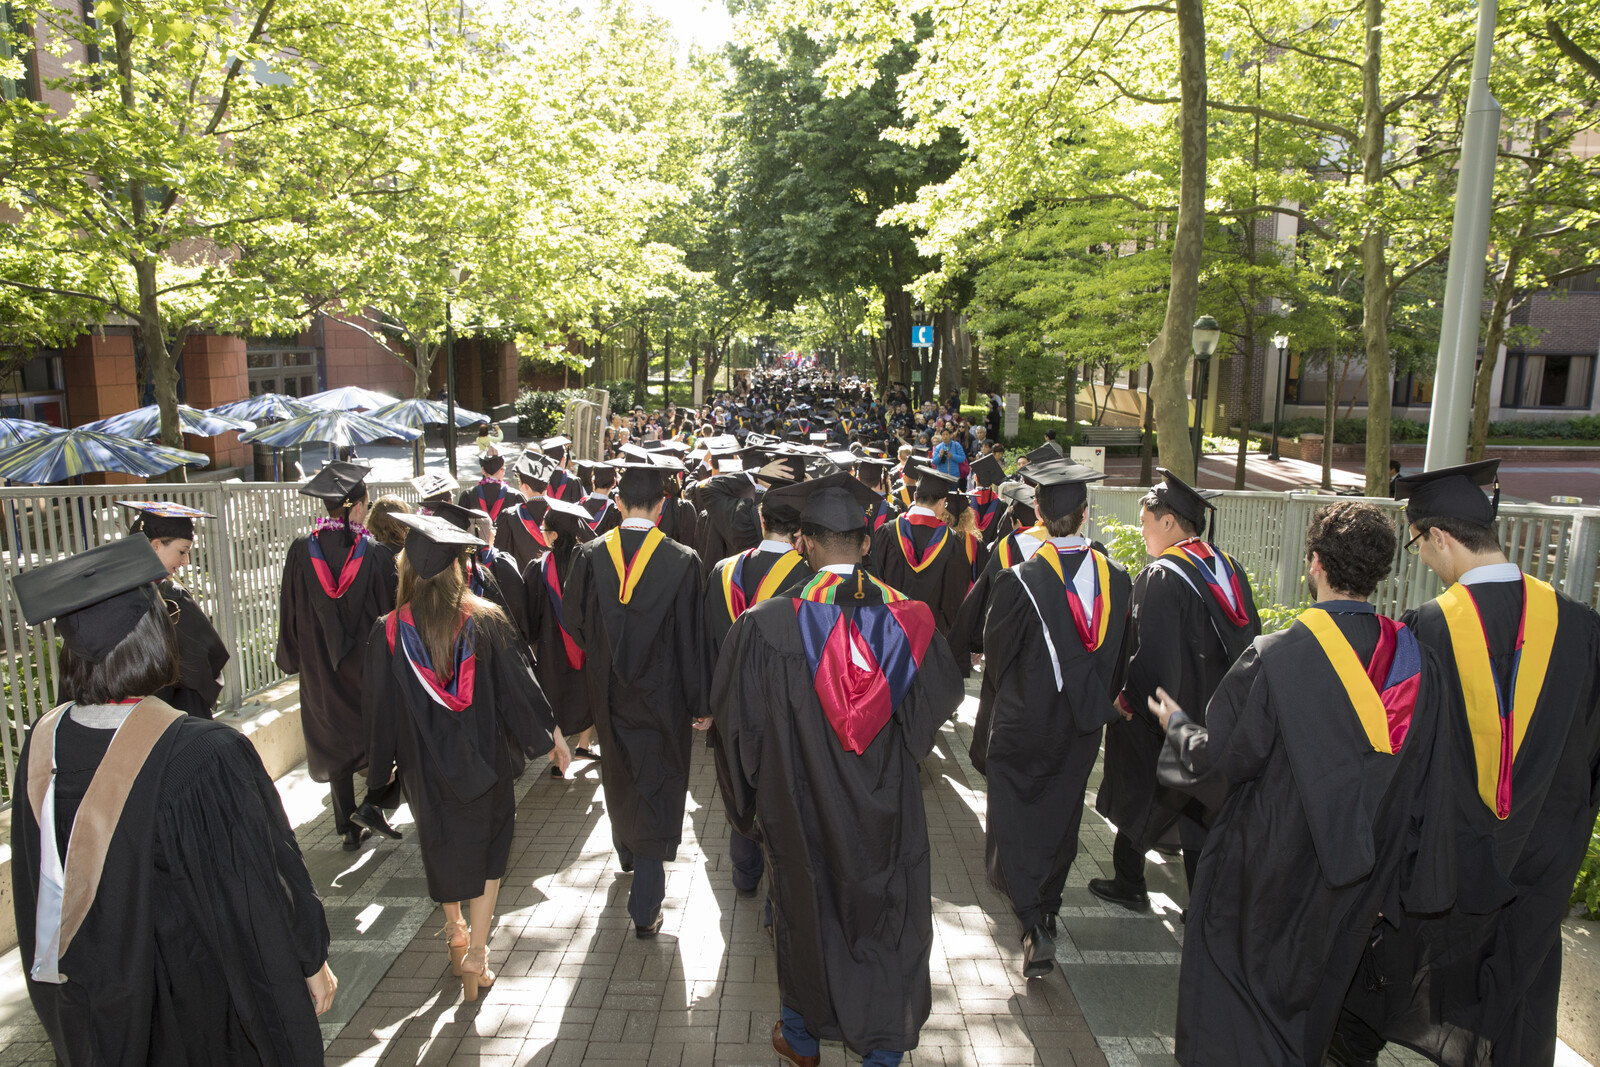 Procession of graduates through campus